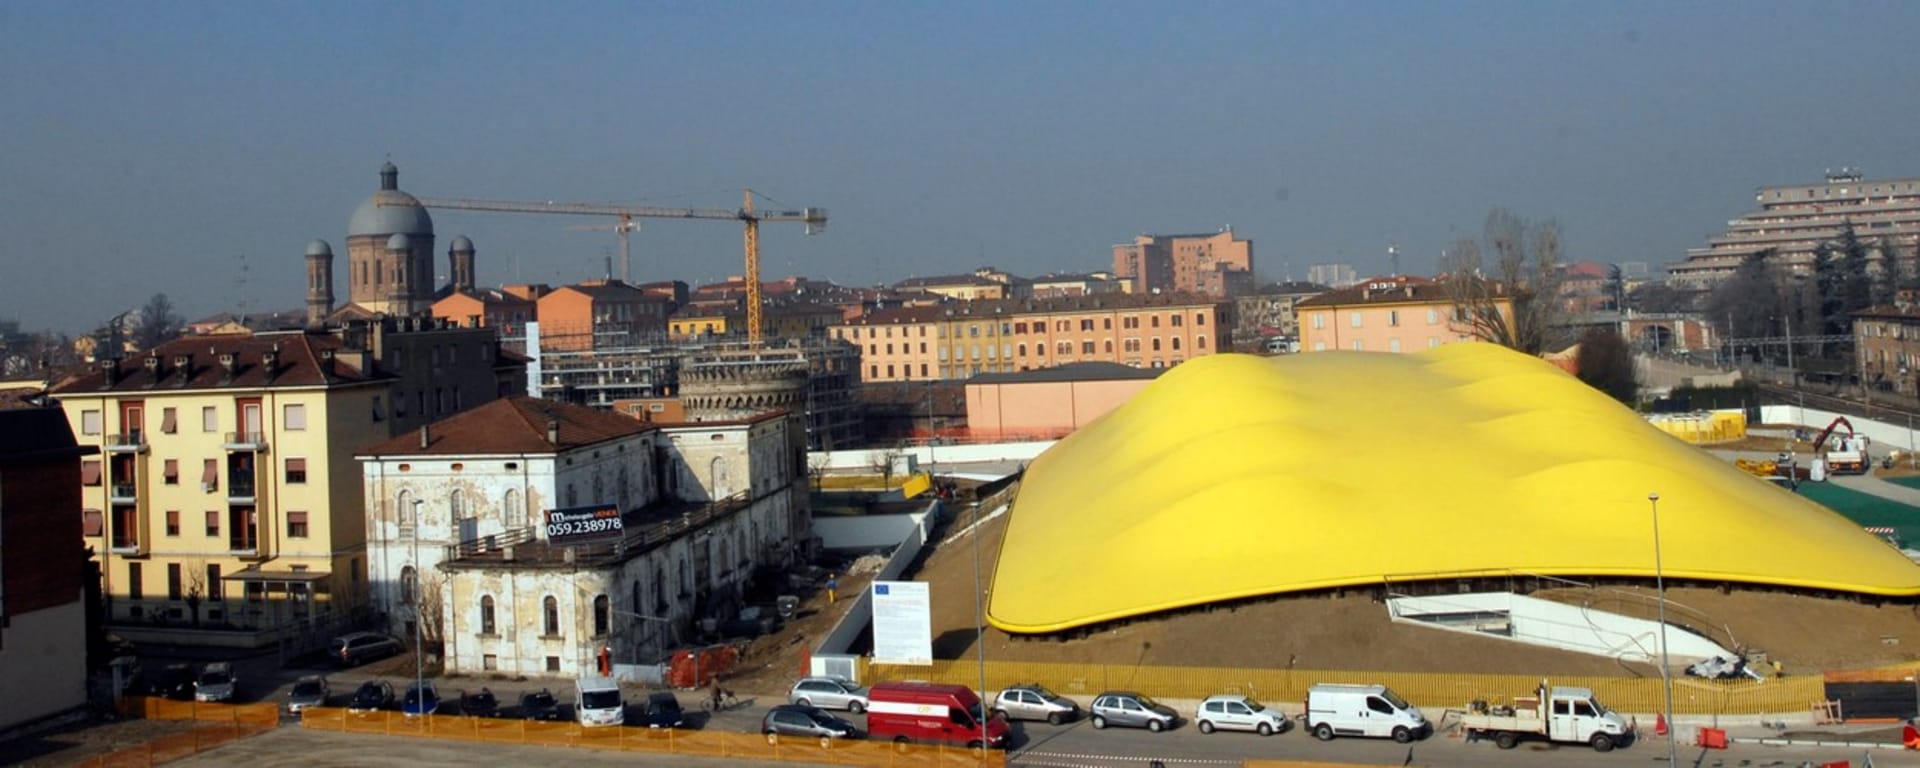 Muzeum Ferrari v italské Modeně byla dokončeno v roce 2012